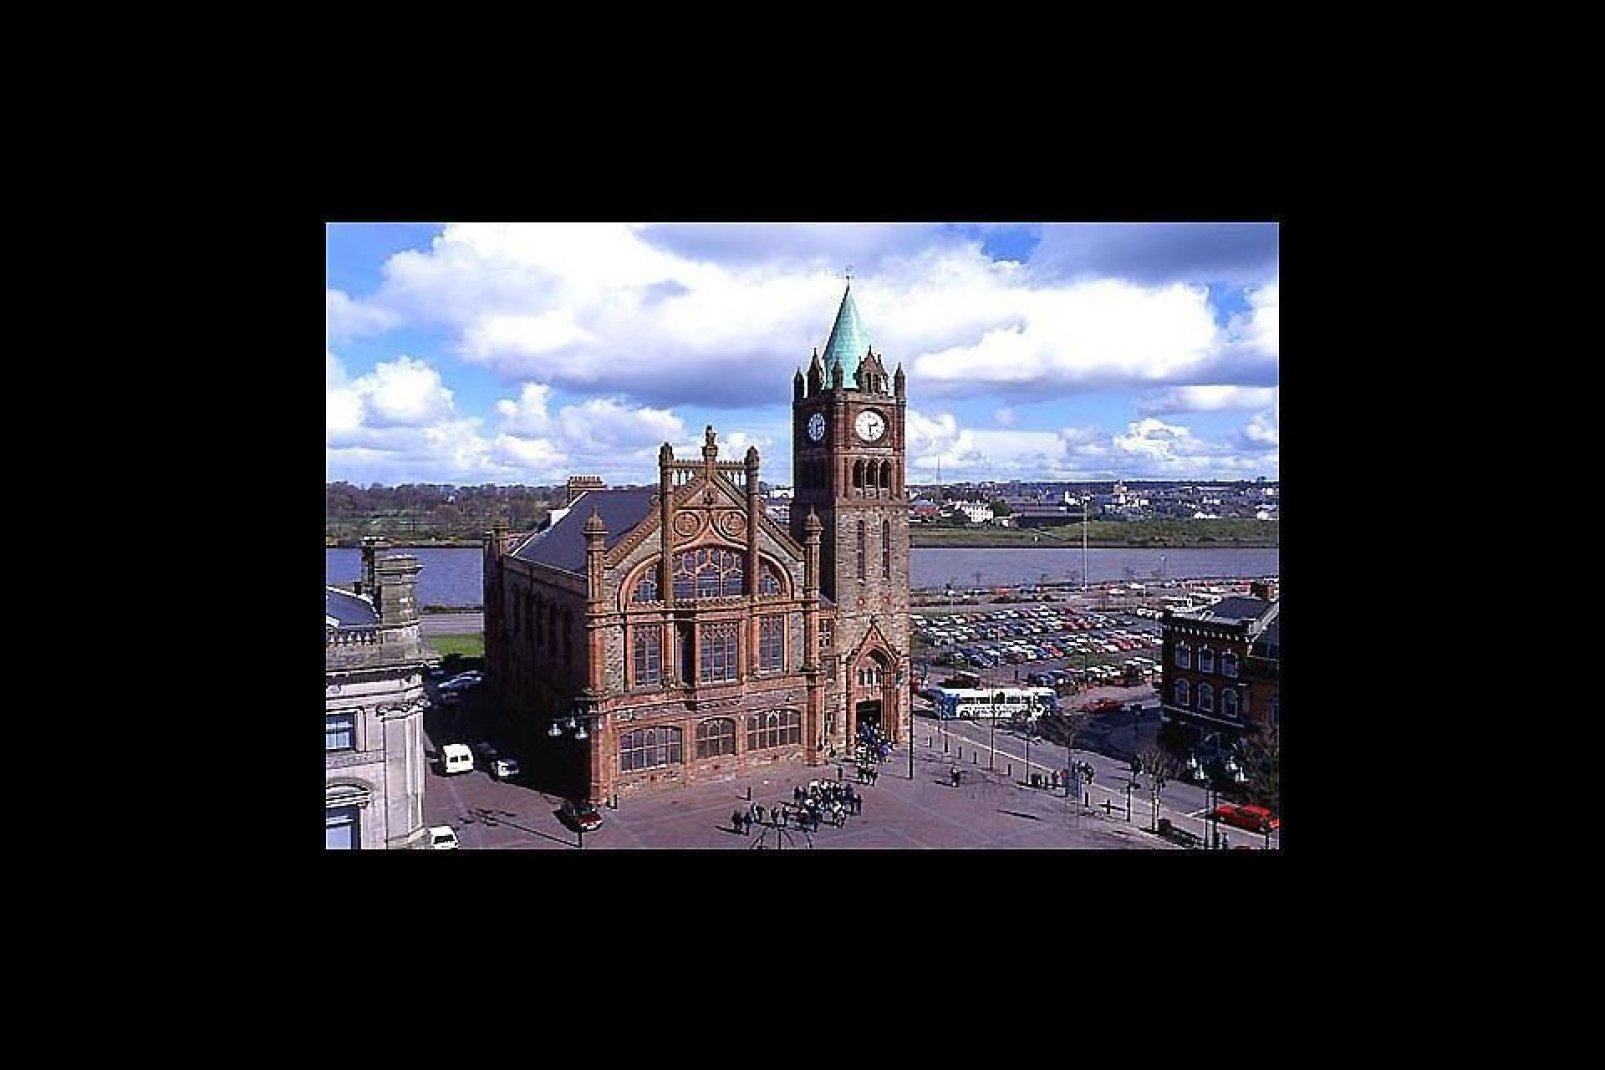 Derry, definita anche Londonderry, è la seconda città più grande dell'Irlanda del Nord. L'antica città fortificata si trova sulla riva occidentale della Foyle, fiume attraversato da due ponti.